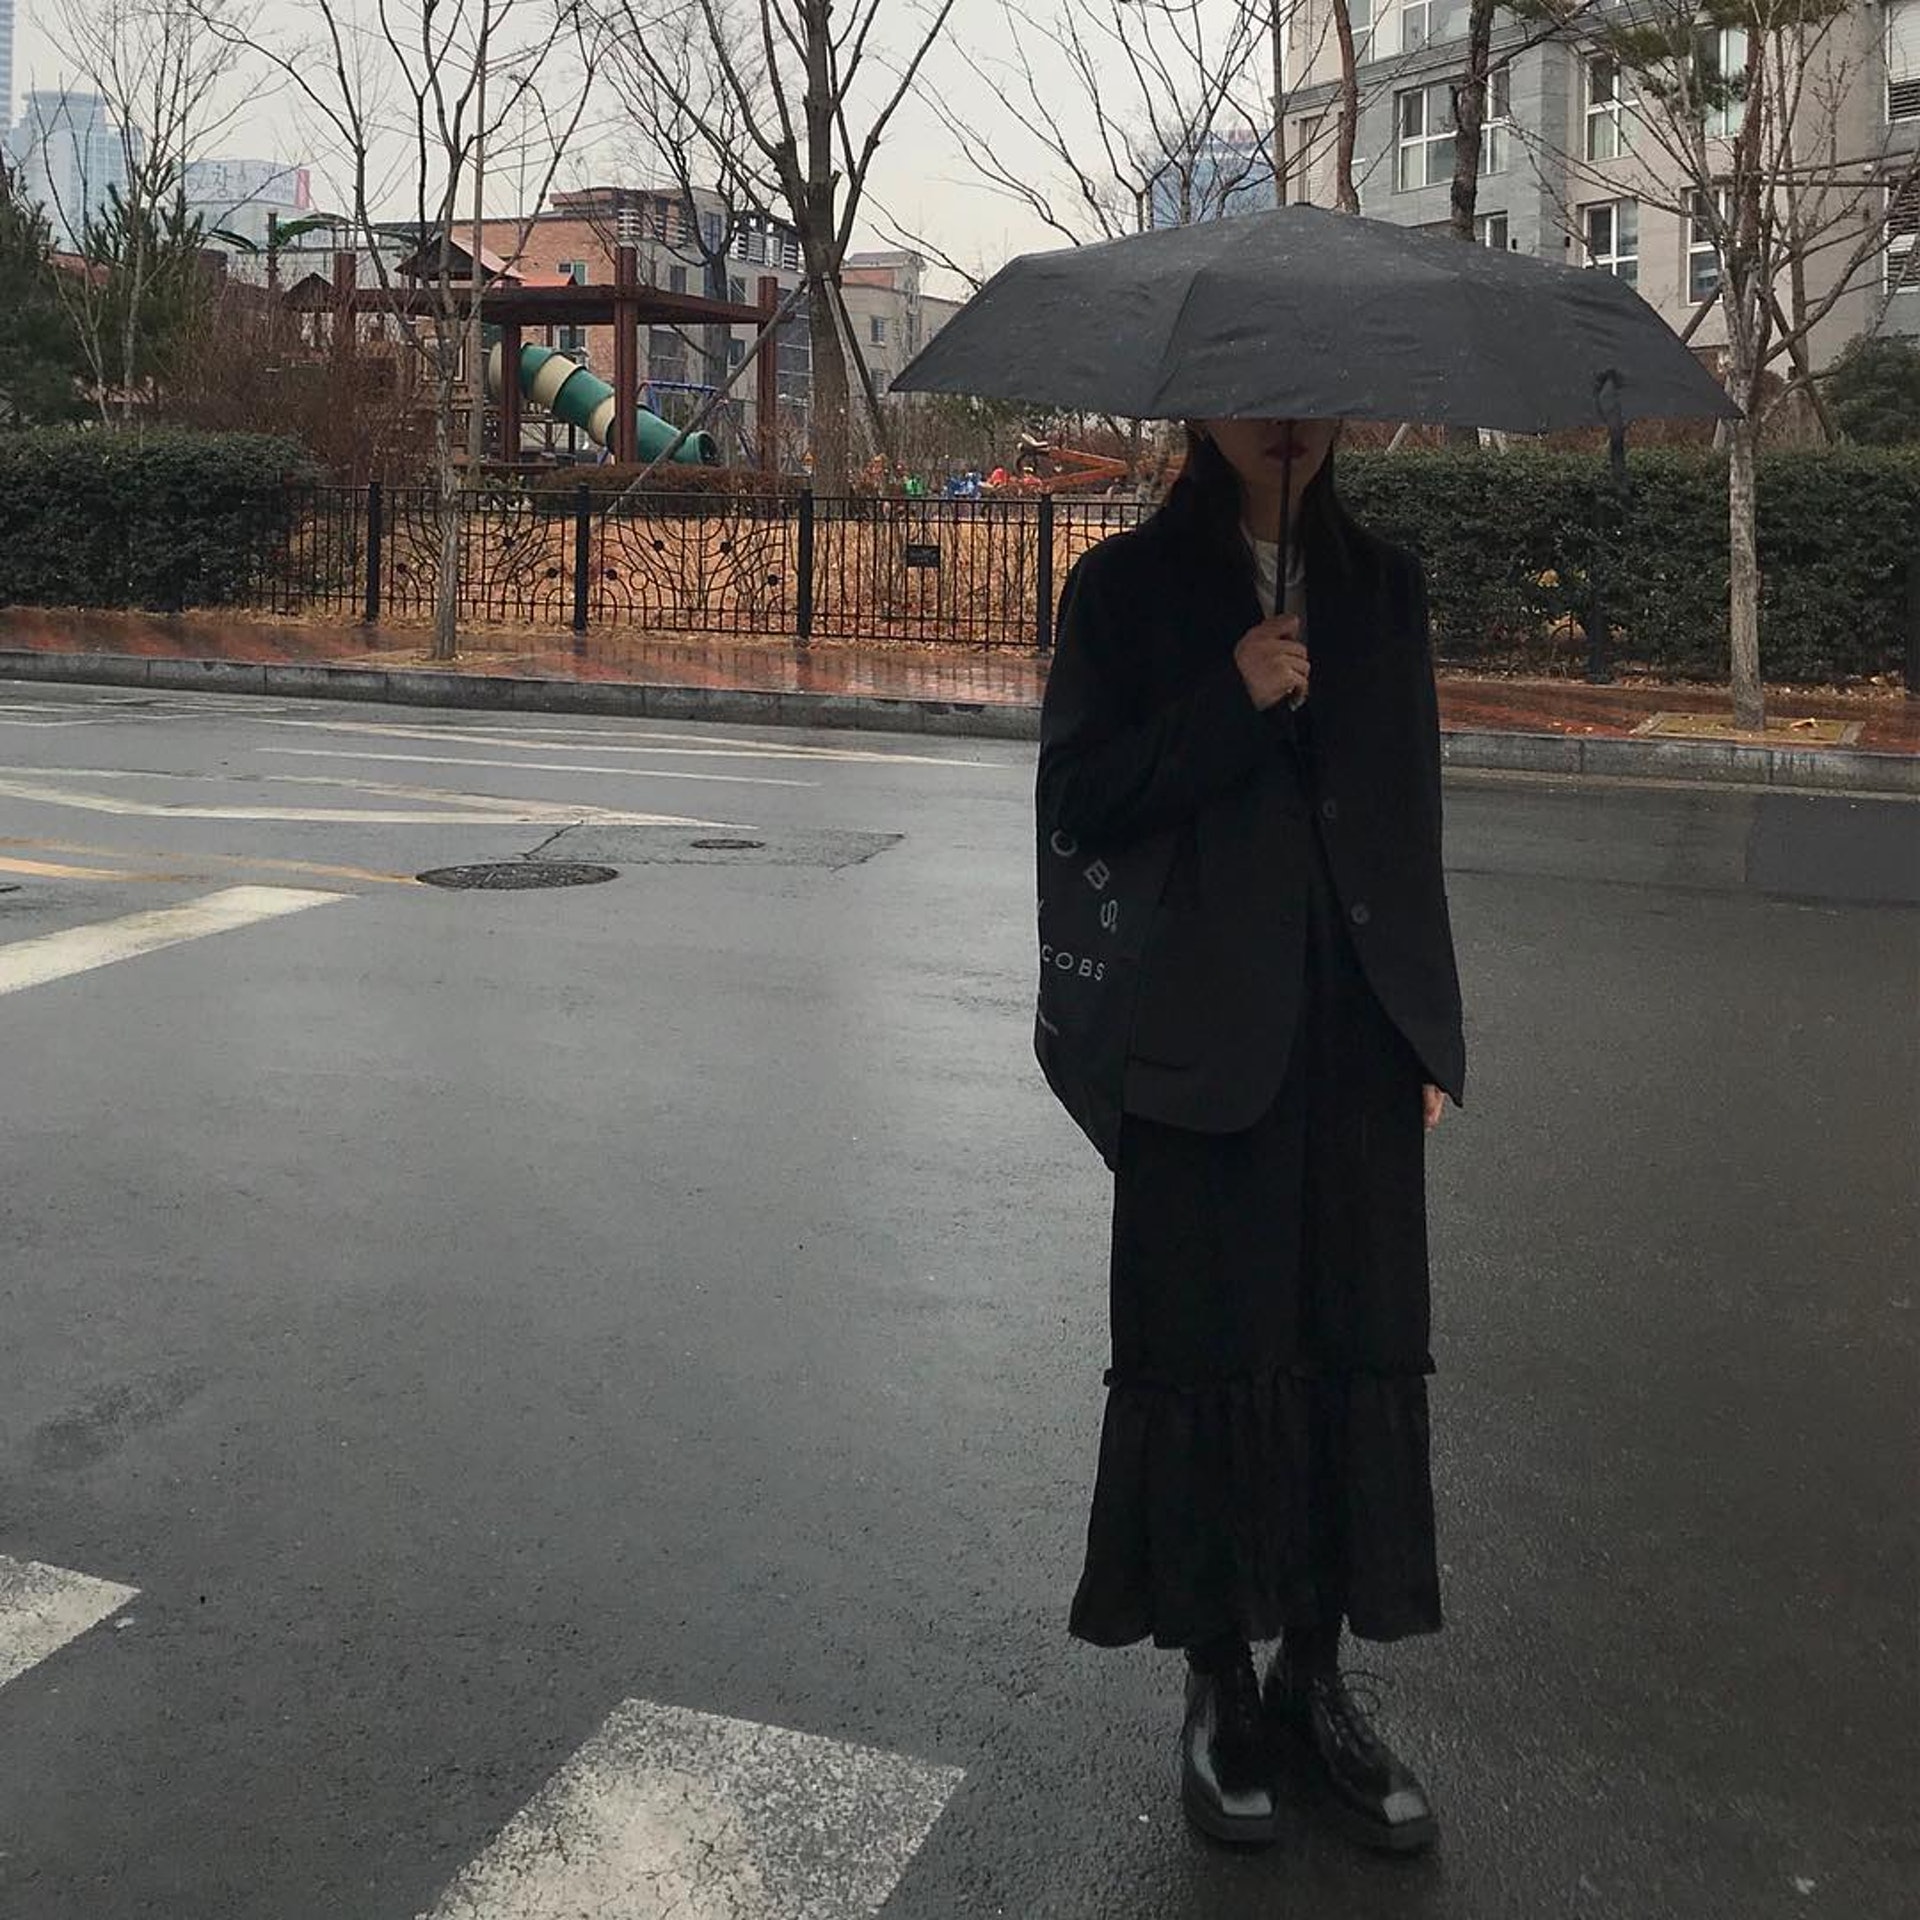 韓國女生Bohemianxse喜愛全黑打扮。(bohemianxse@Instagram)